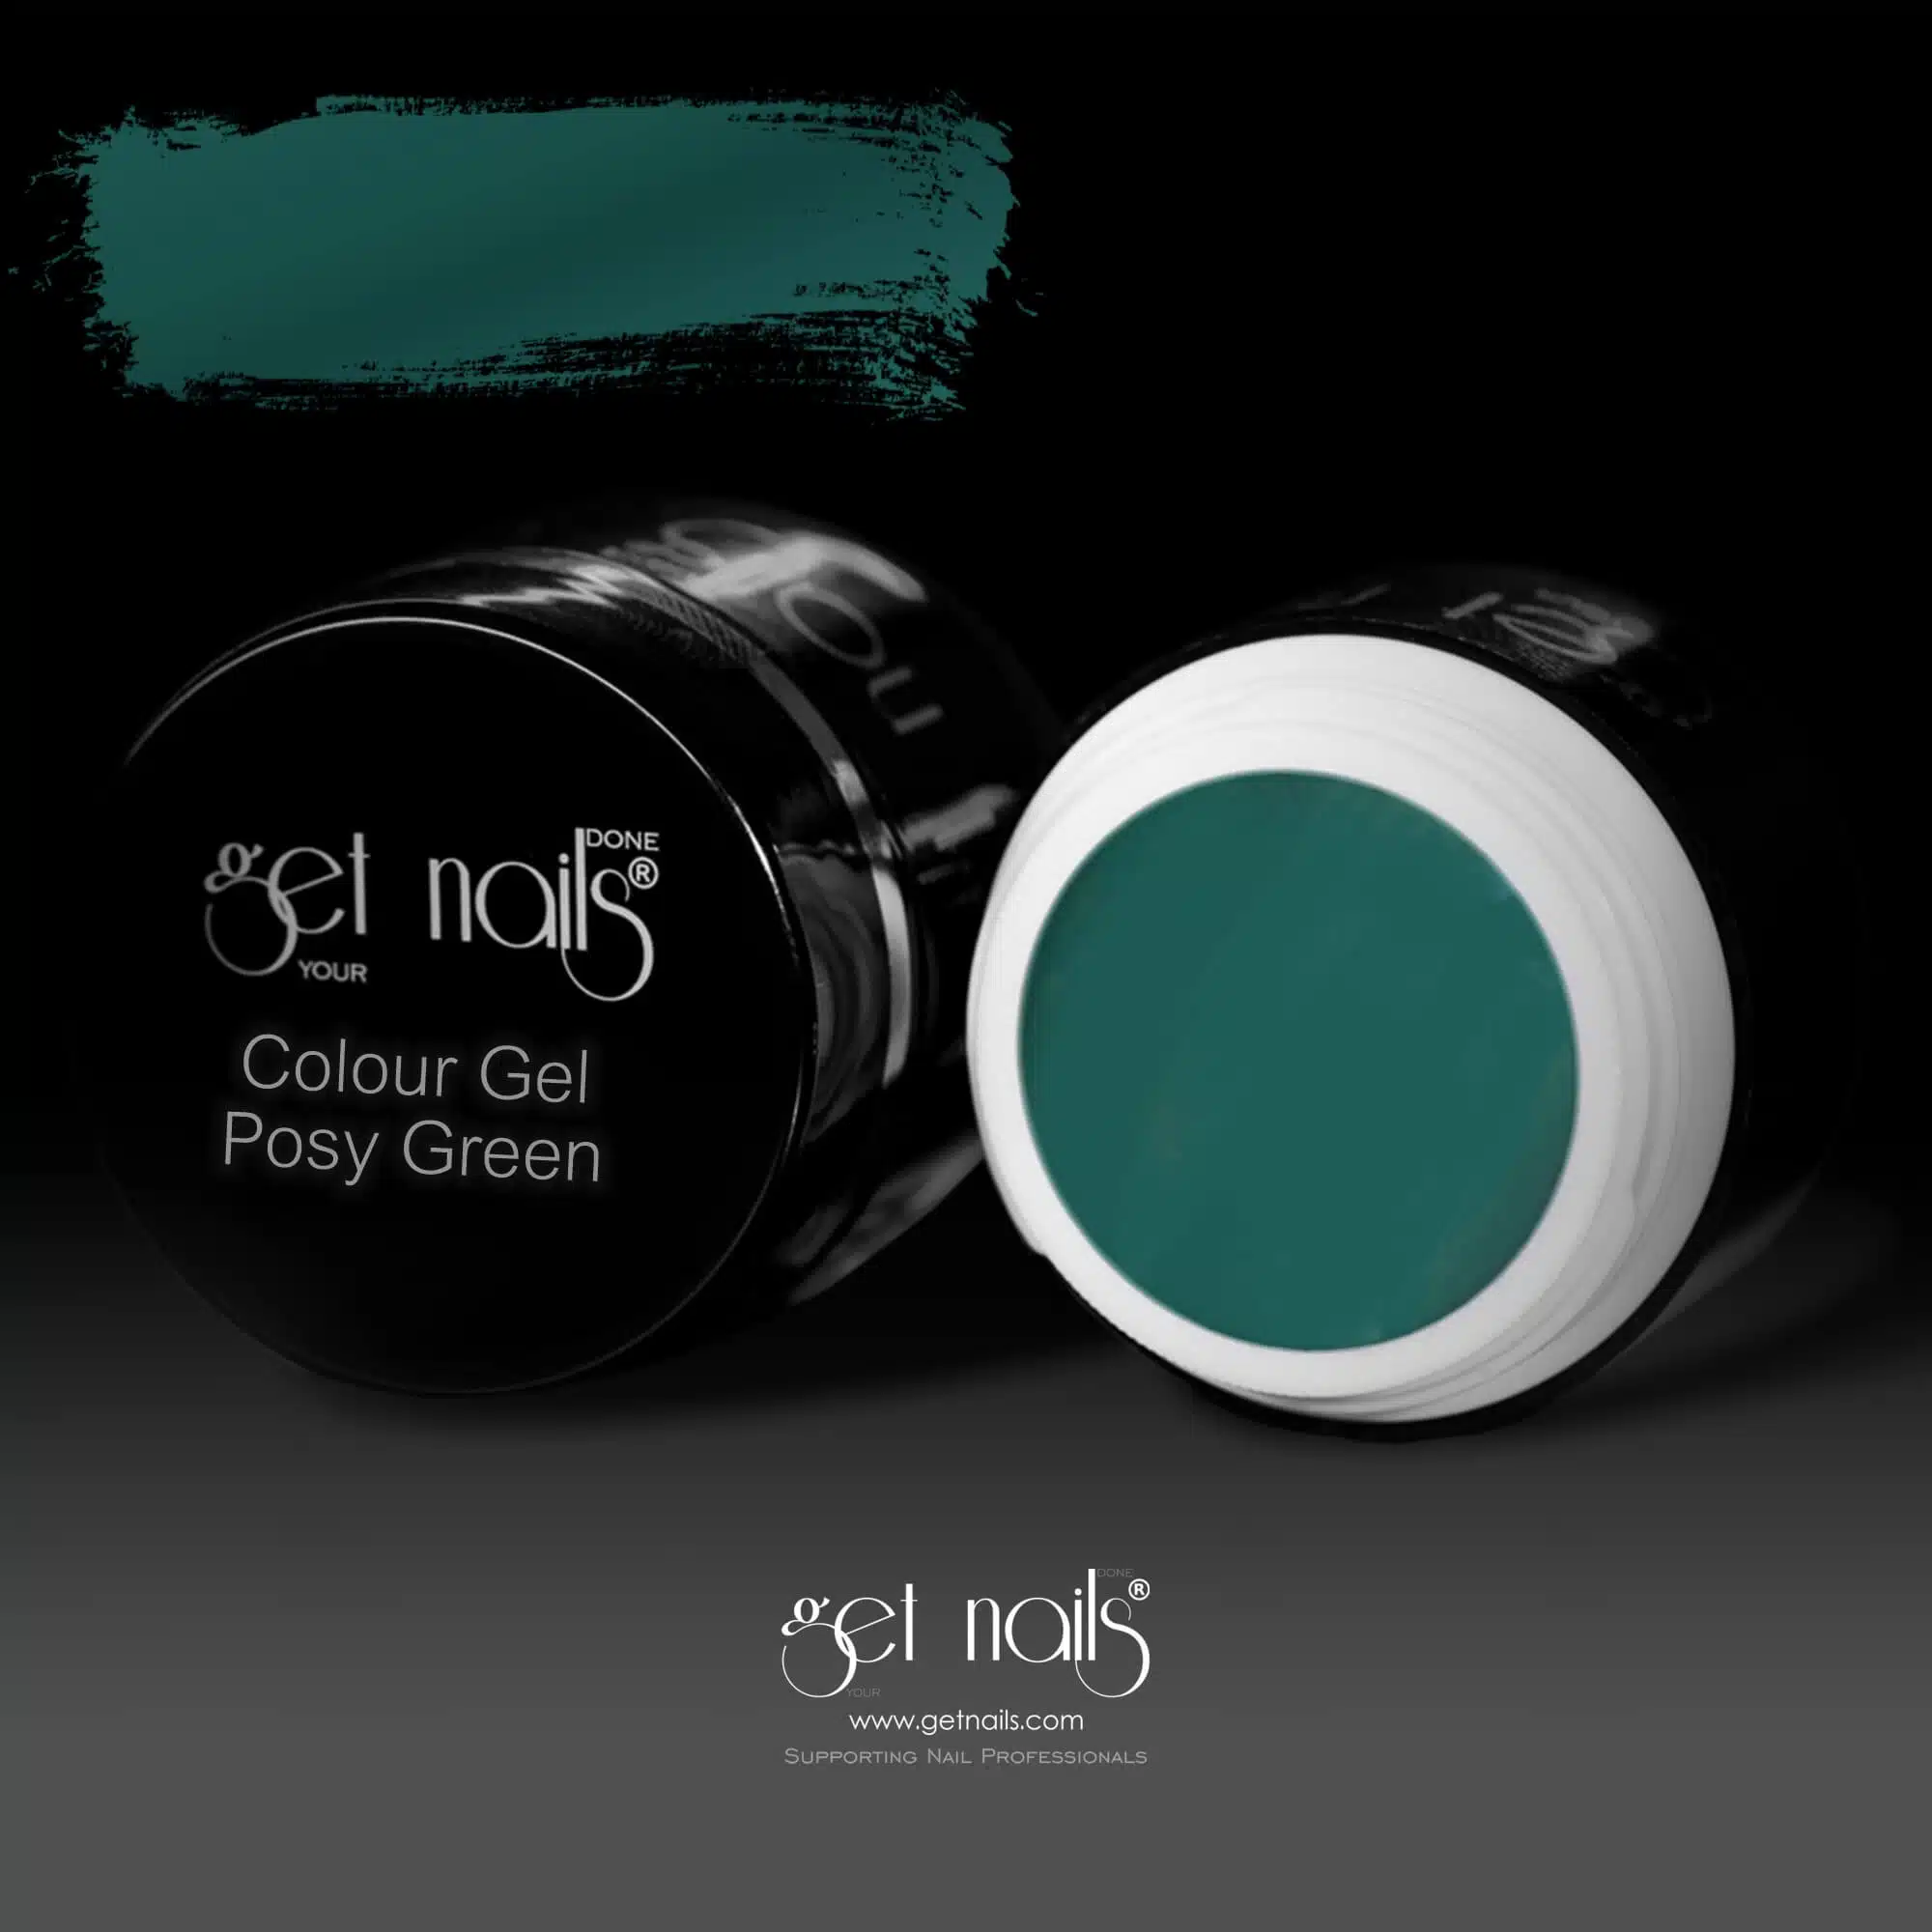 Get Nails Austria - Цветной гель Posy Green 5g